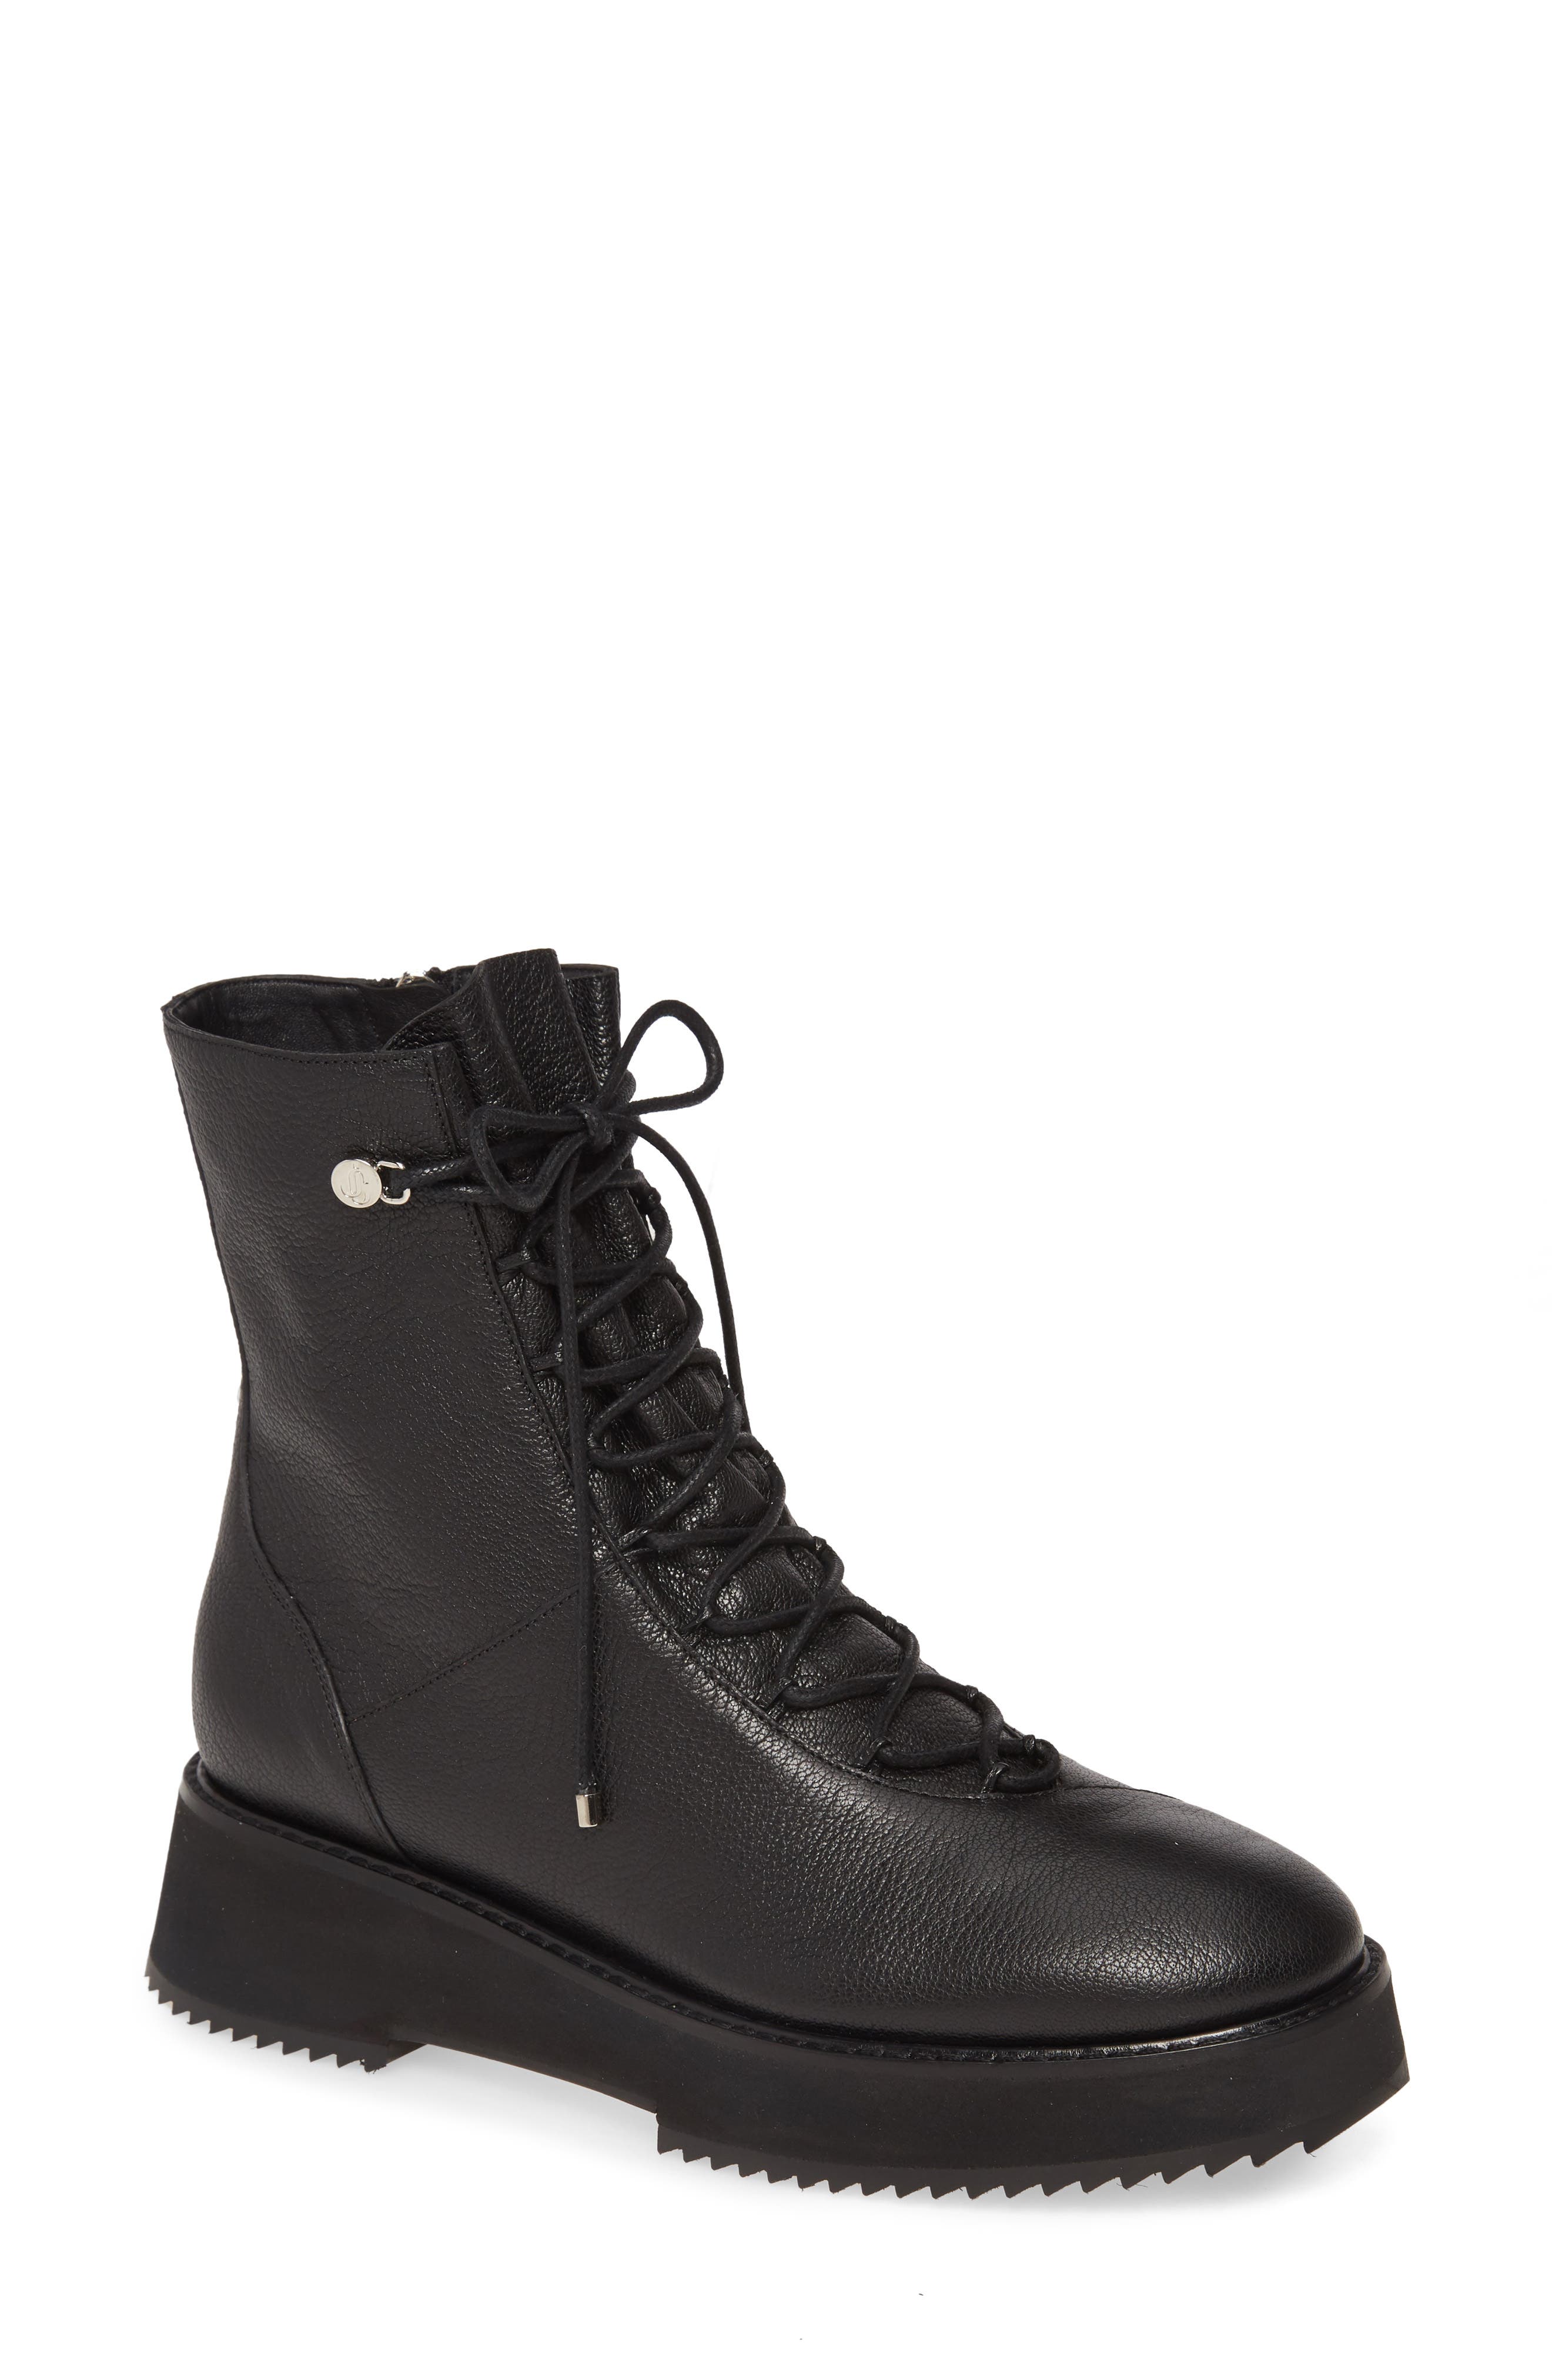 jimmy choo combat boots sale